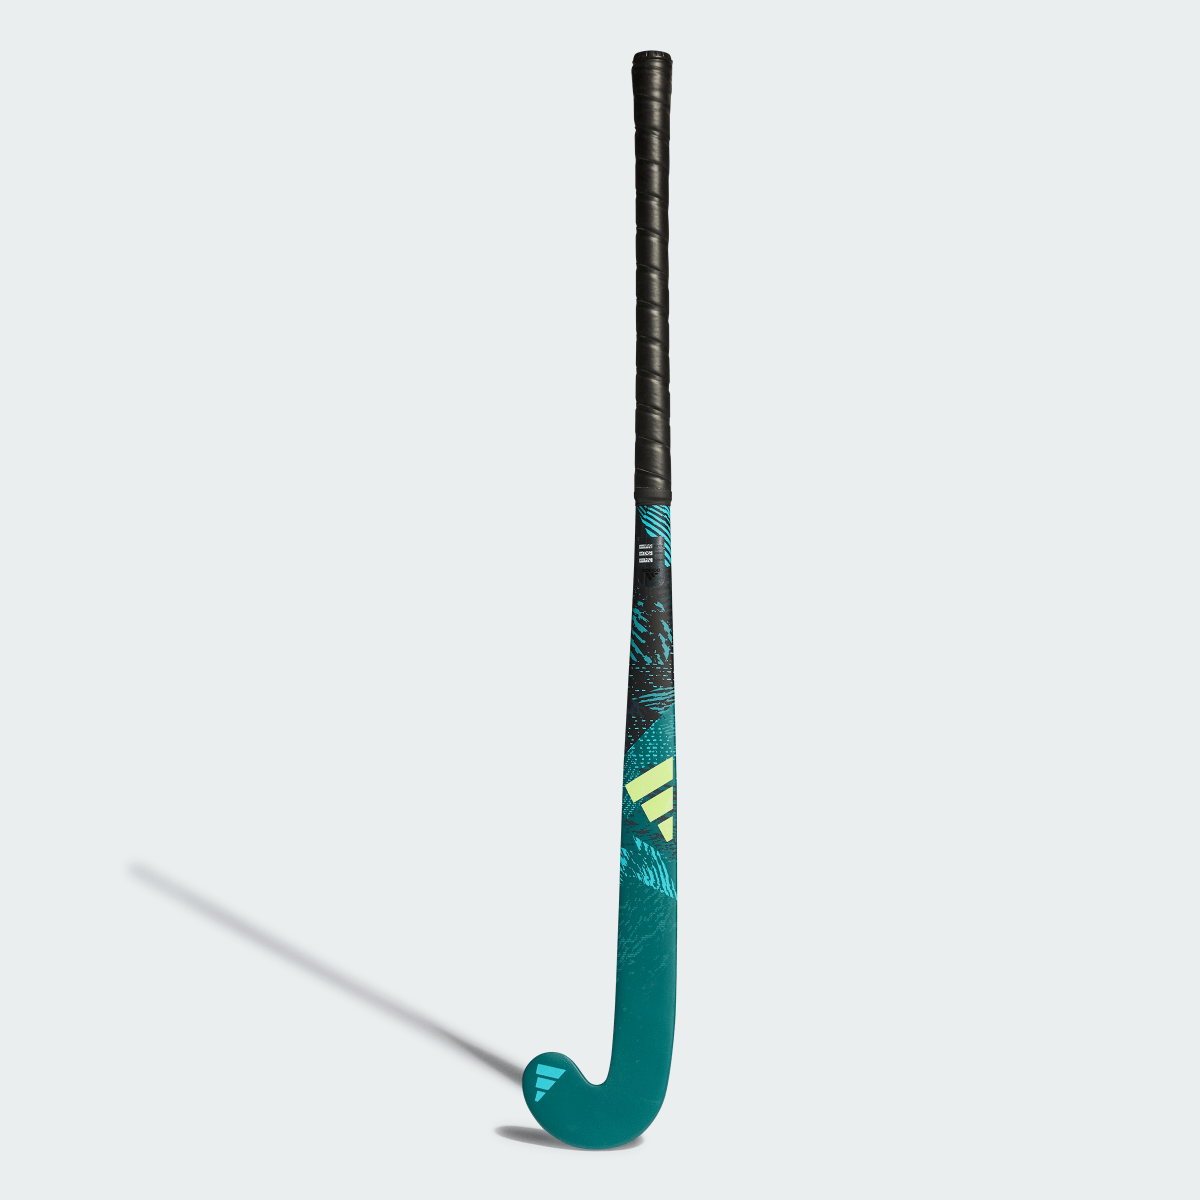 Adidas Stick de hockey hierba Youngstar.9 61 cm. 3